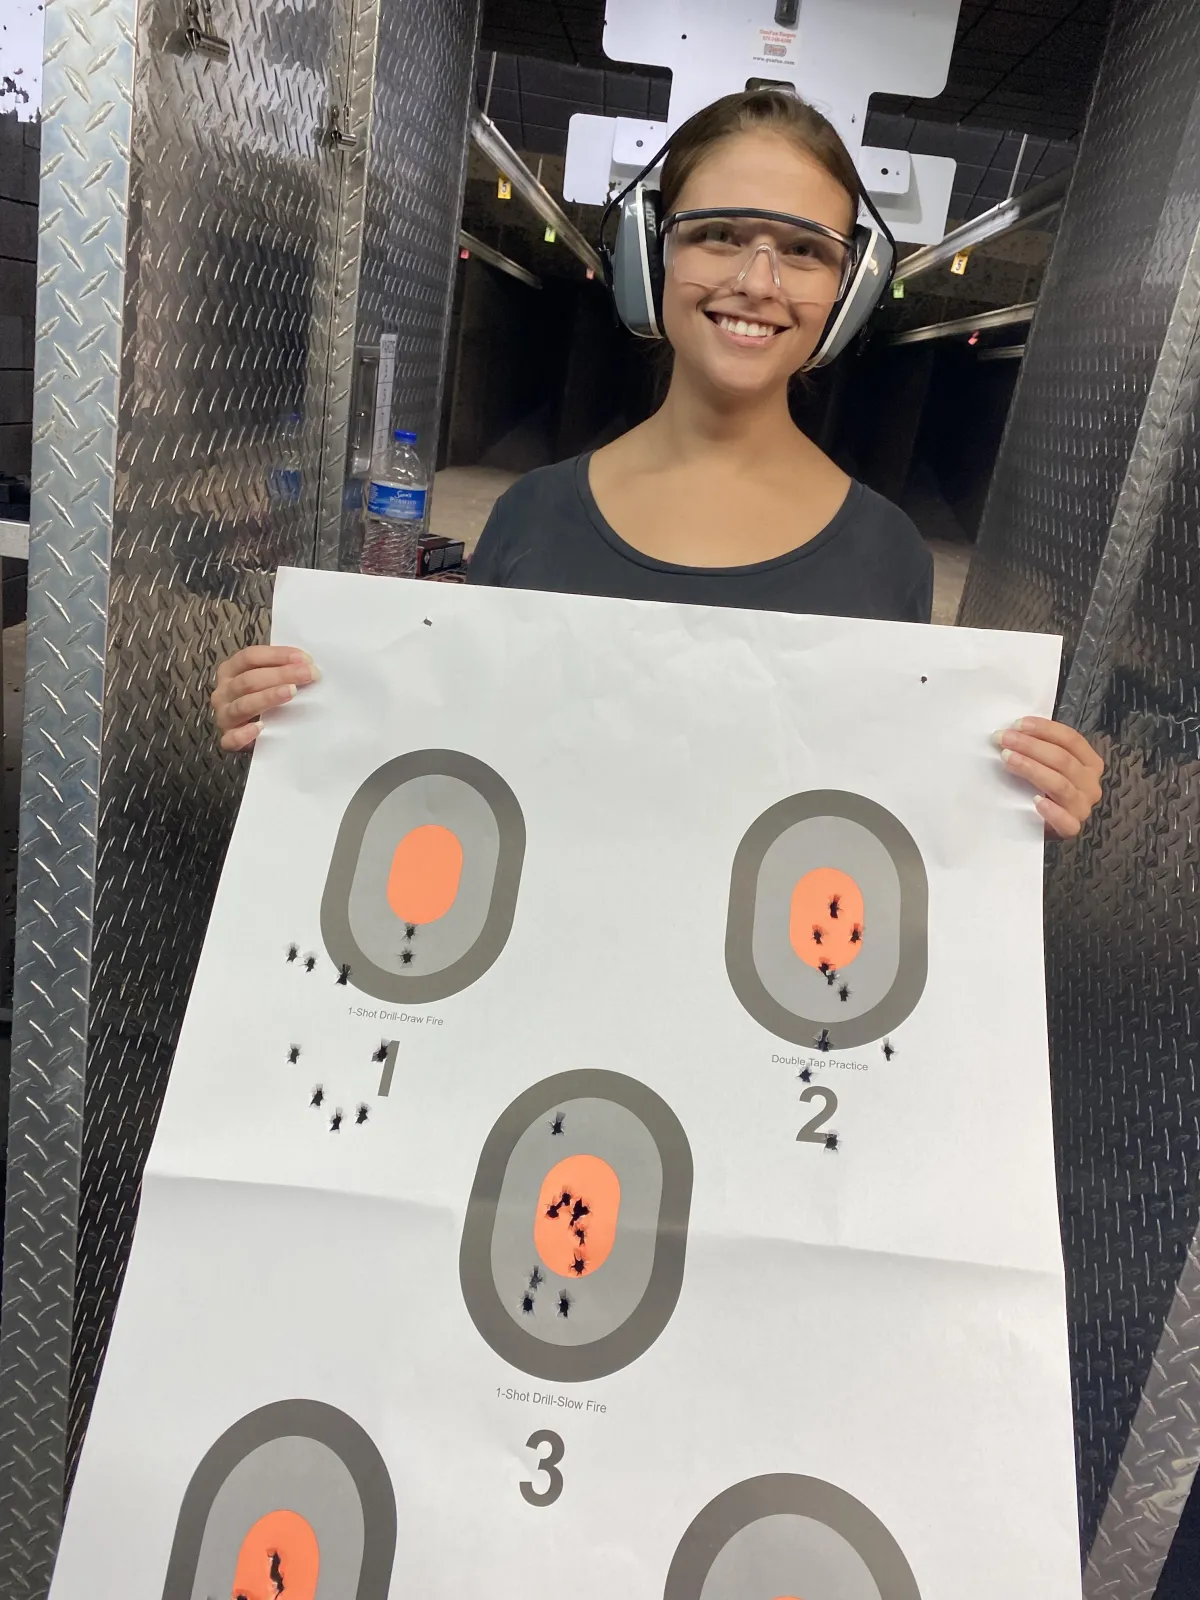 Woman holding target at gun range